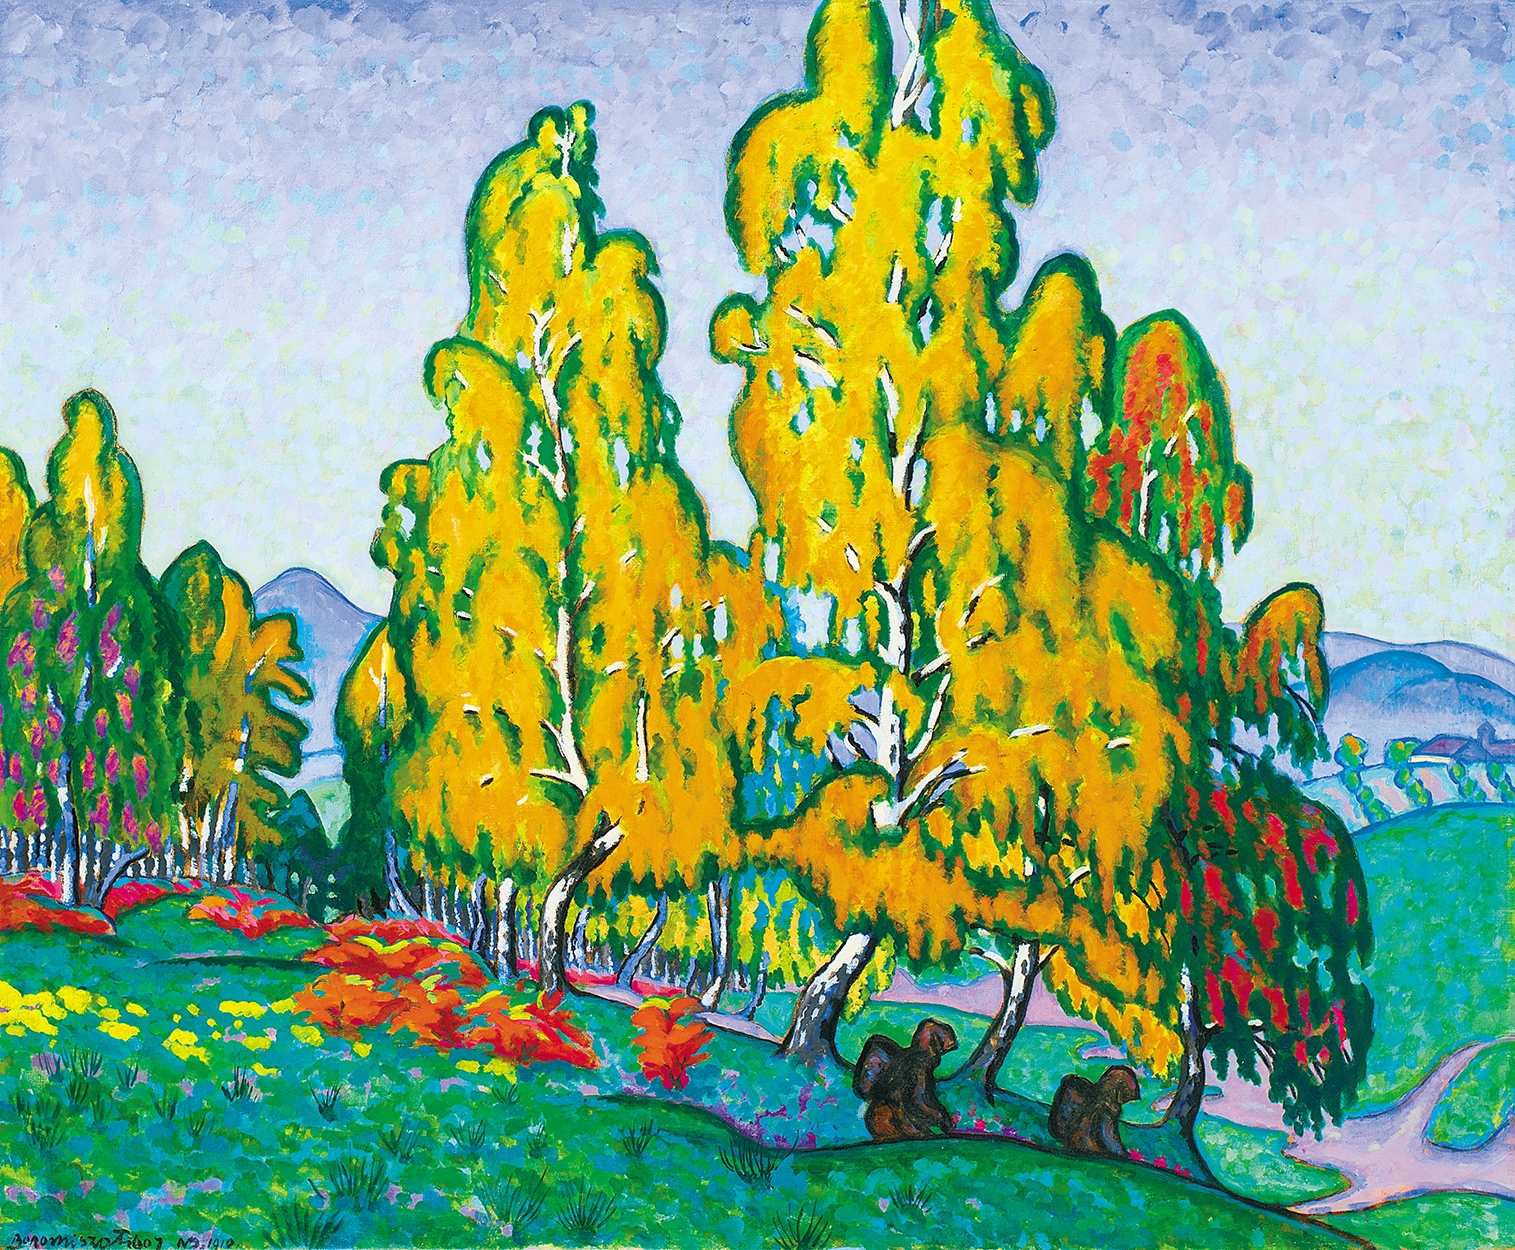 Boromisza Tibor (1880-1960) Birch-wood at Autumn, 1910